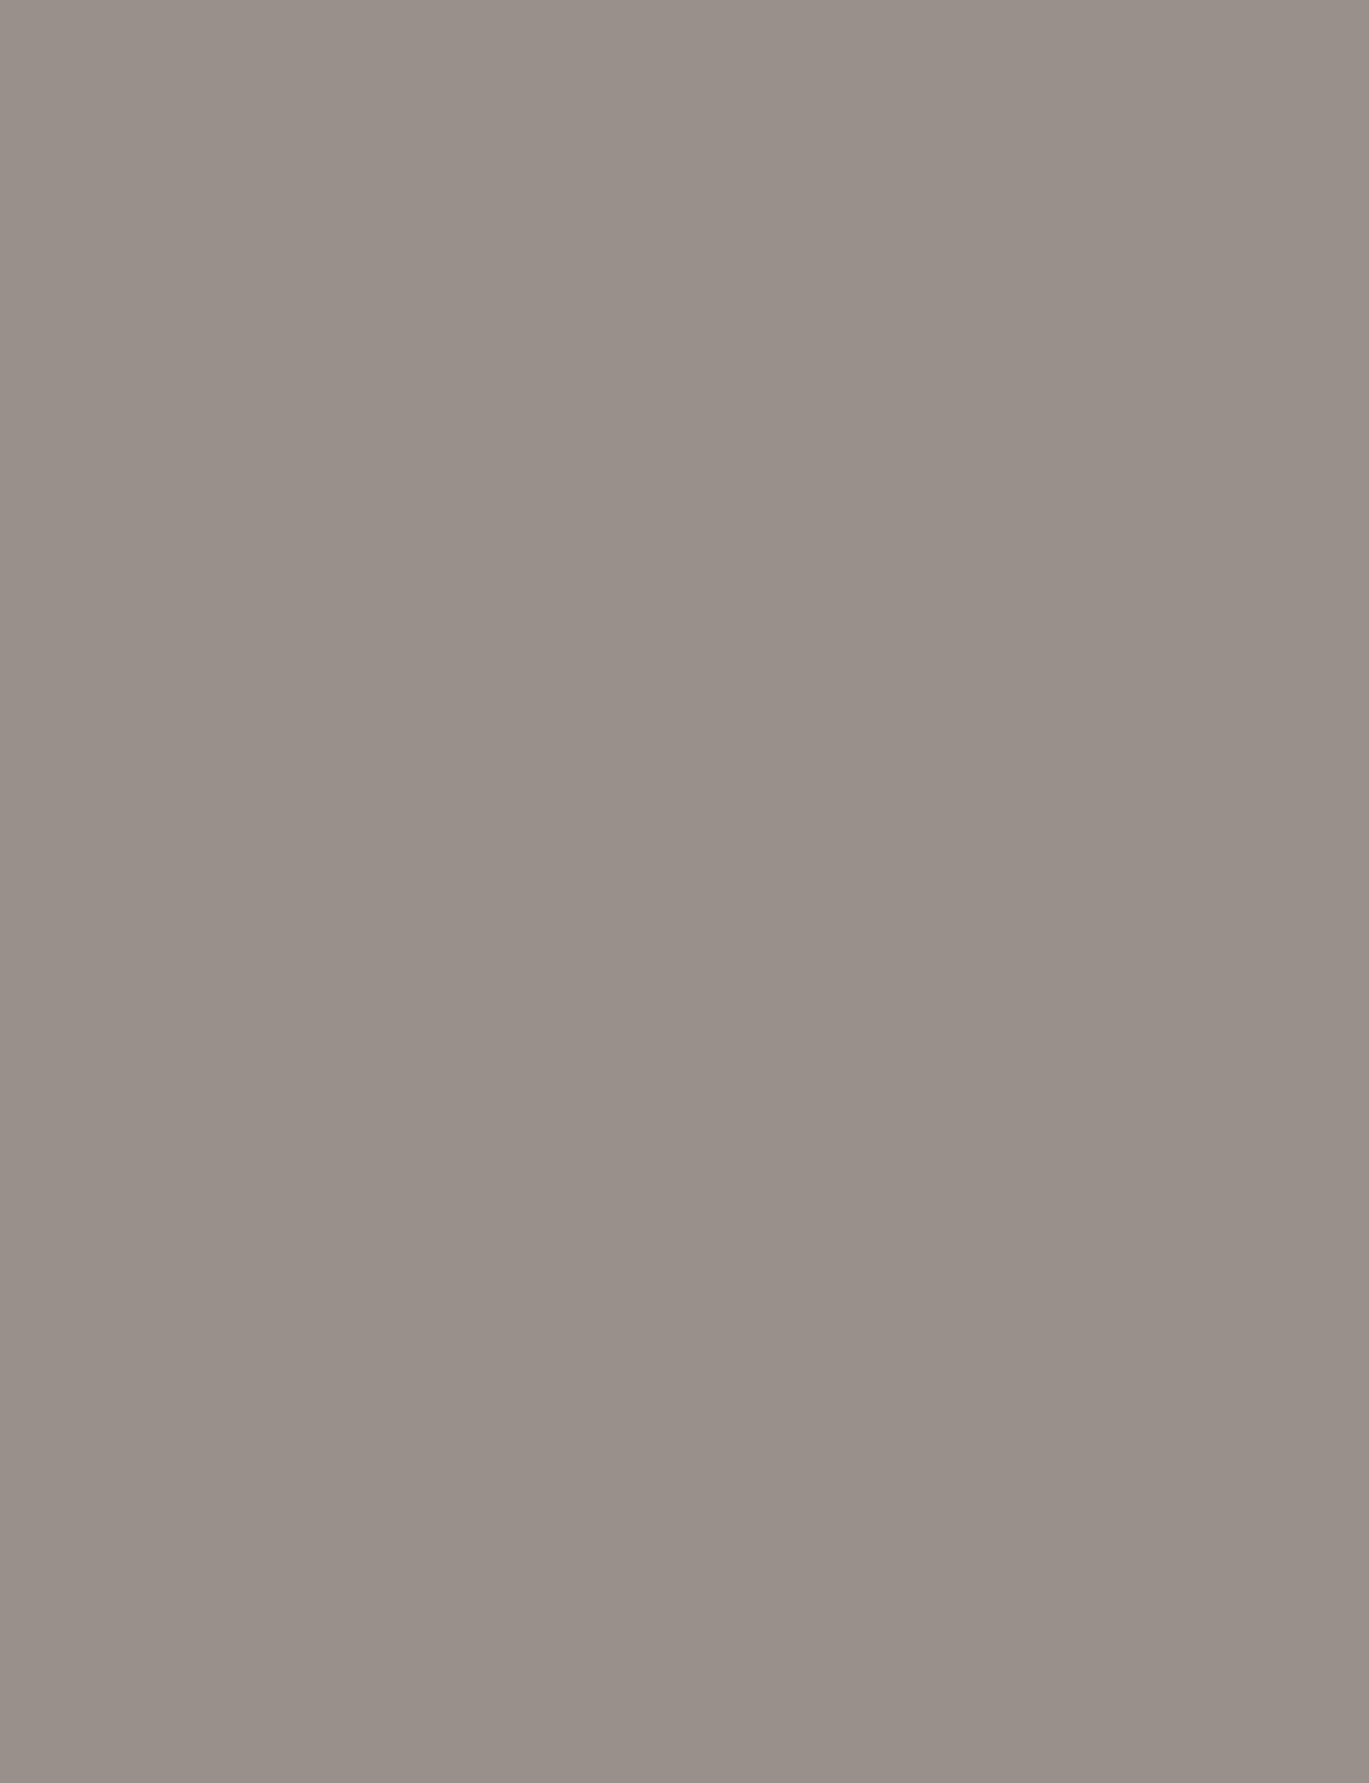 И. Макаров. Портрет Ольги и Варвары Араповых. (2-я. пол 19 века, Пензенская картинная галерея)